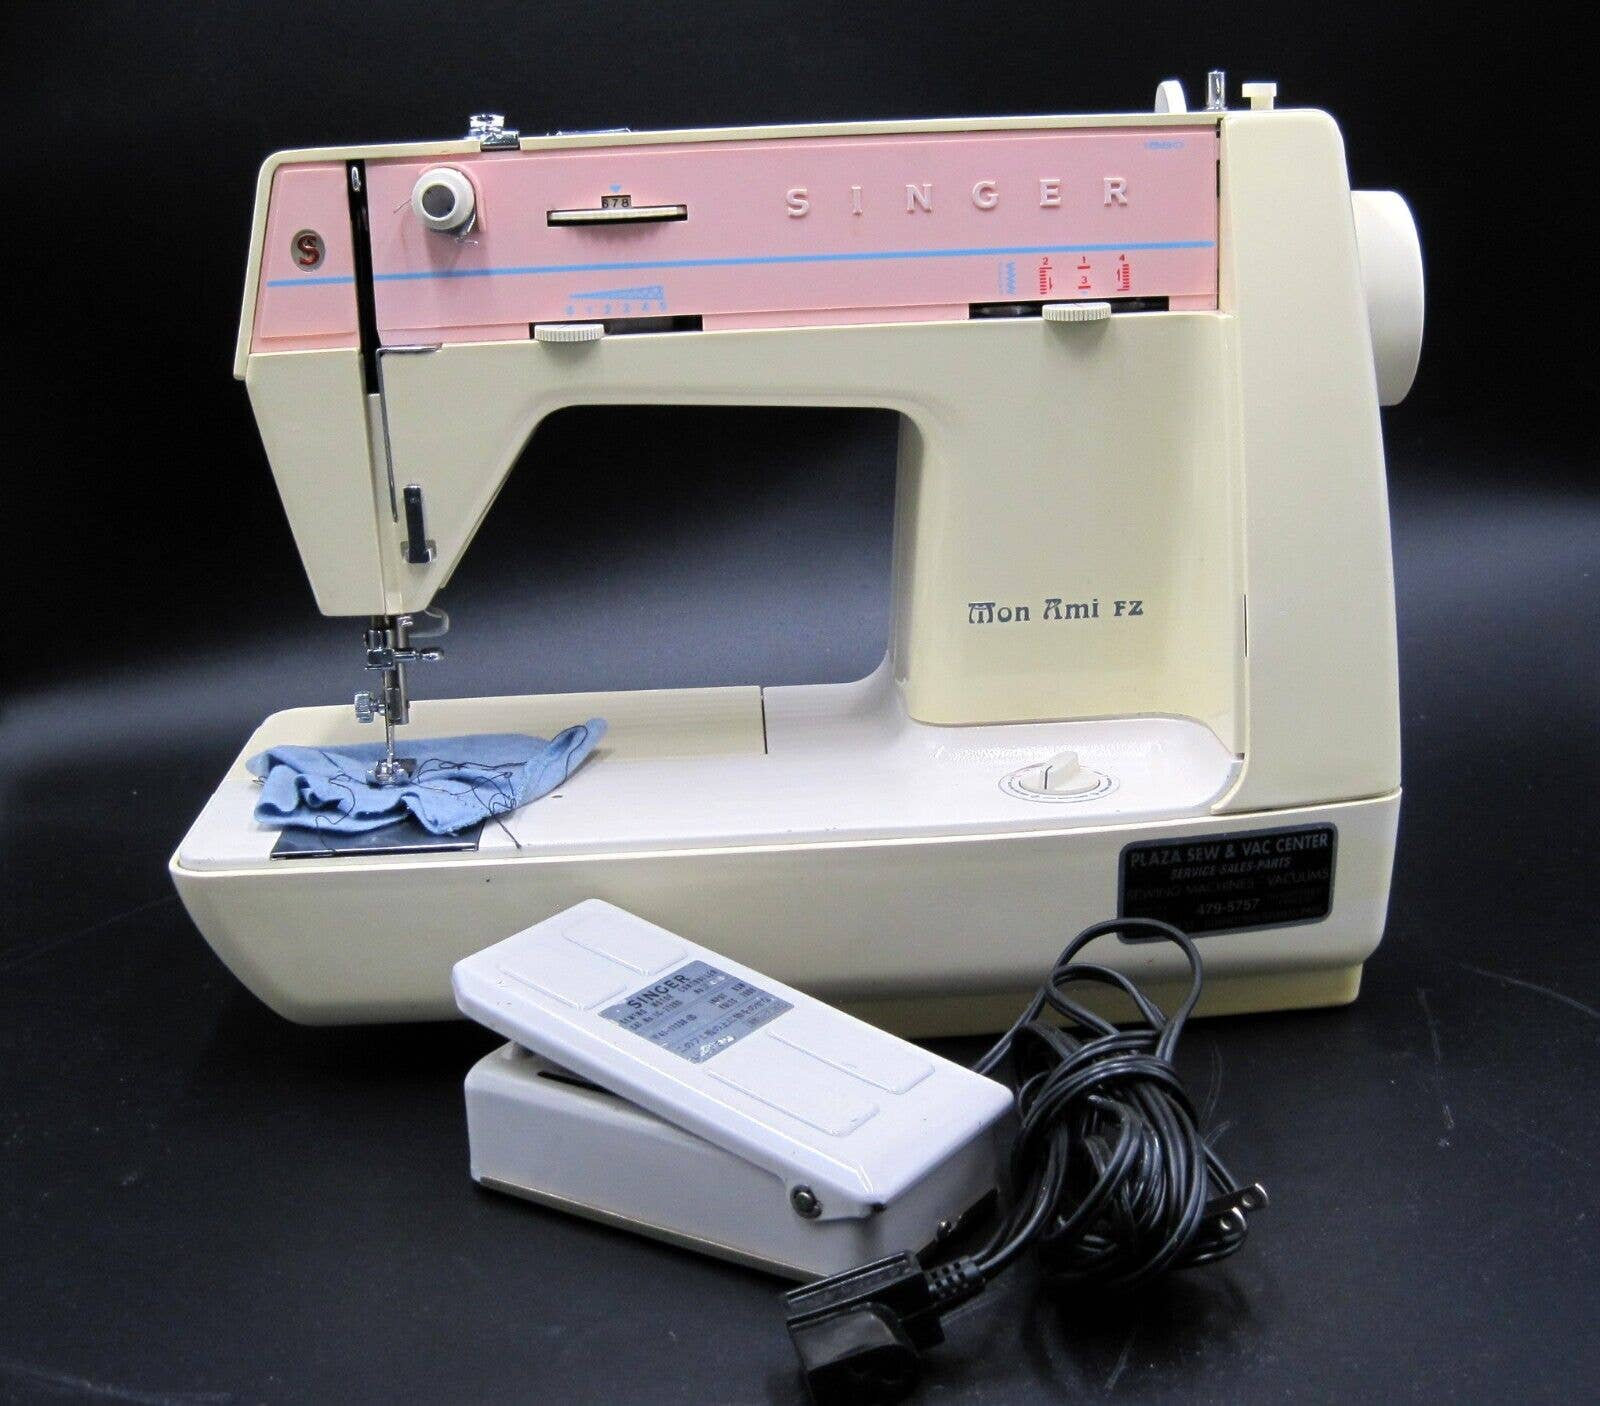 Vintage Singer Mon Ami Sewing Machine JAPAN Rare - Etsy